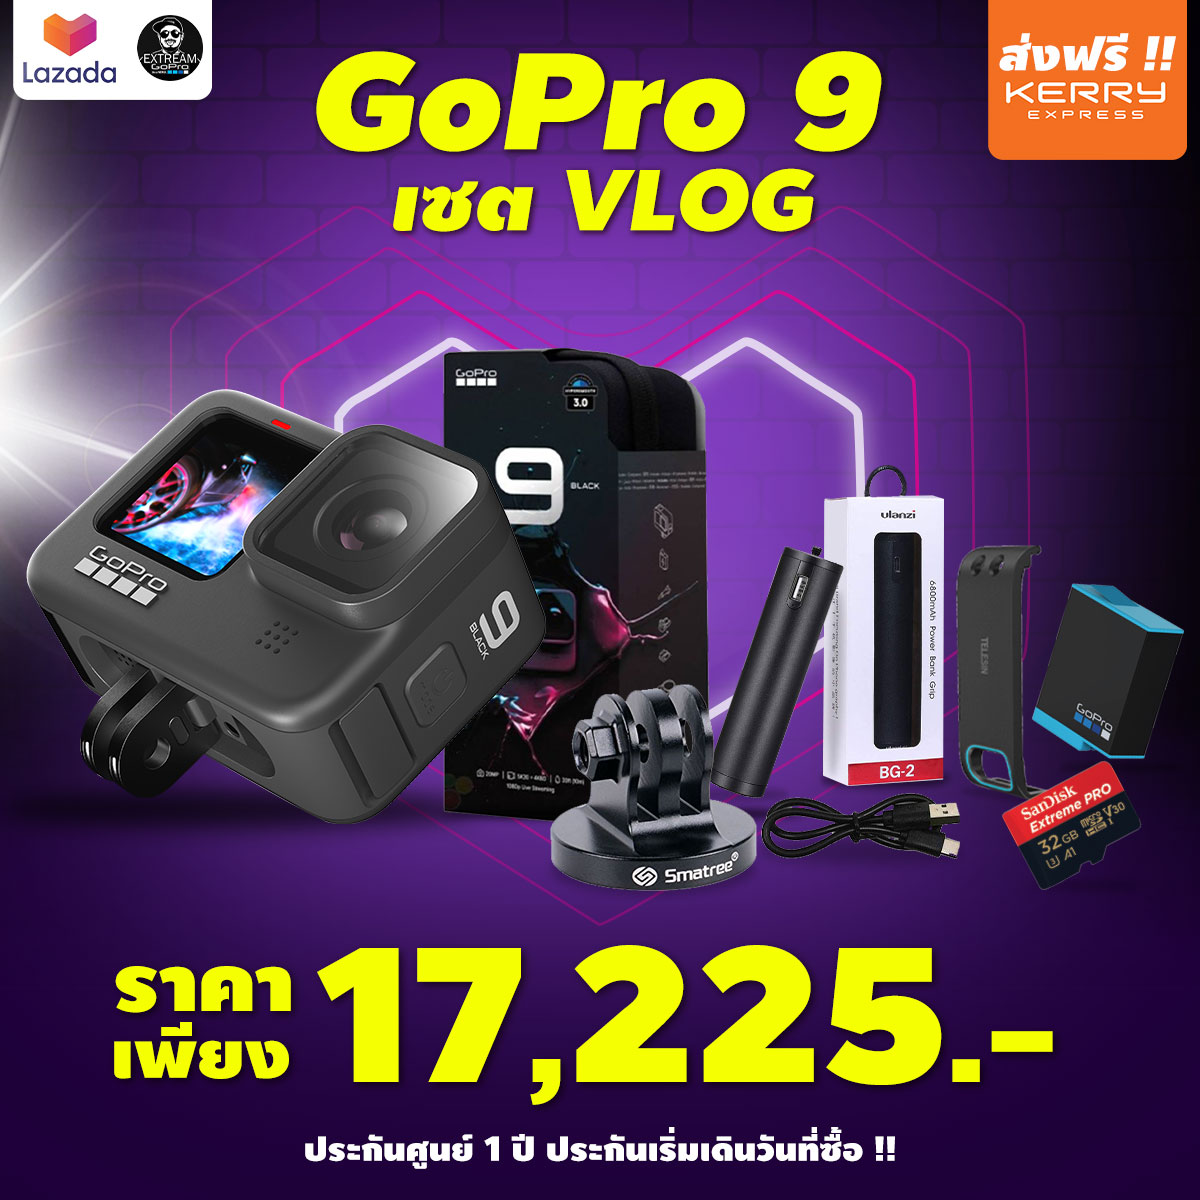 [ส่งฟรี]gopro 9 เซต VLOG กล้องโกโปร กล้องแอคชั่น มีจอหน้า Vlog ส่งฟรี ExtreamGoPro gopro 9